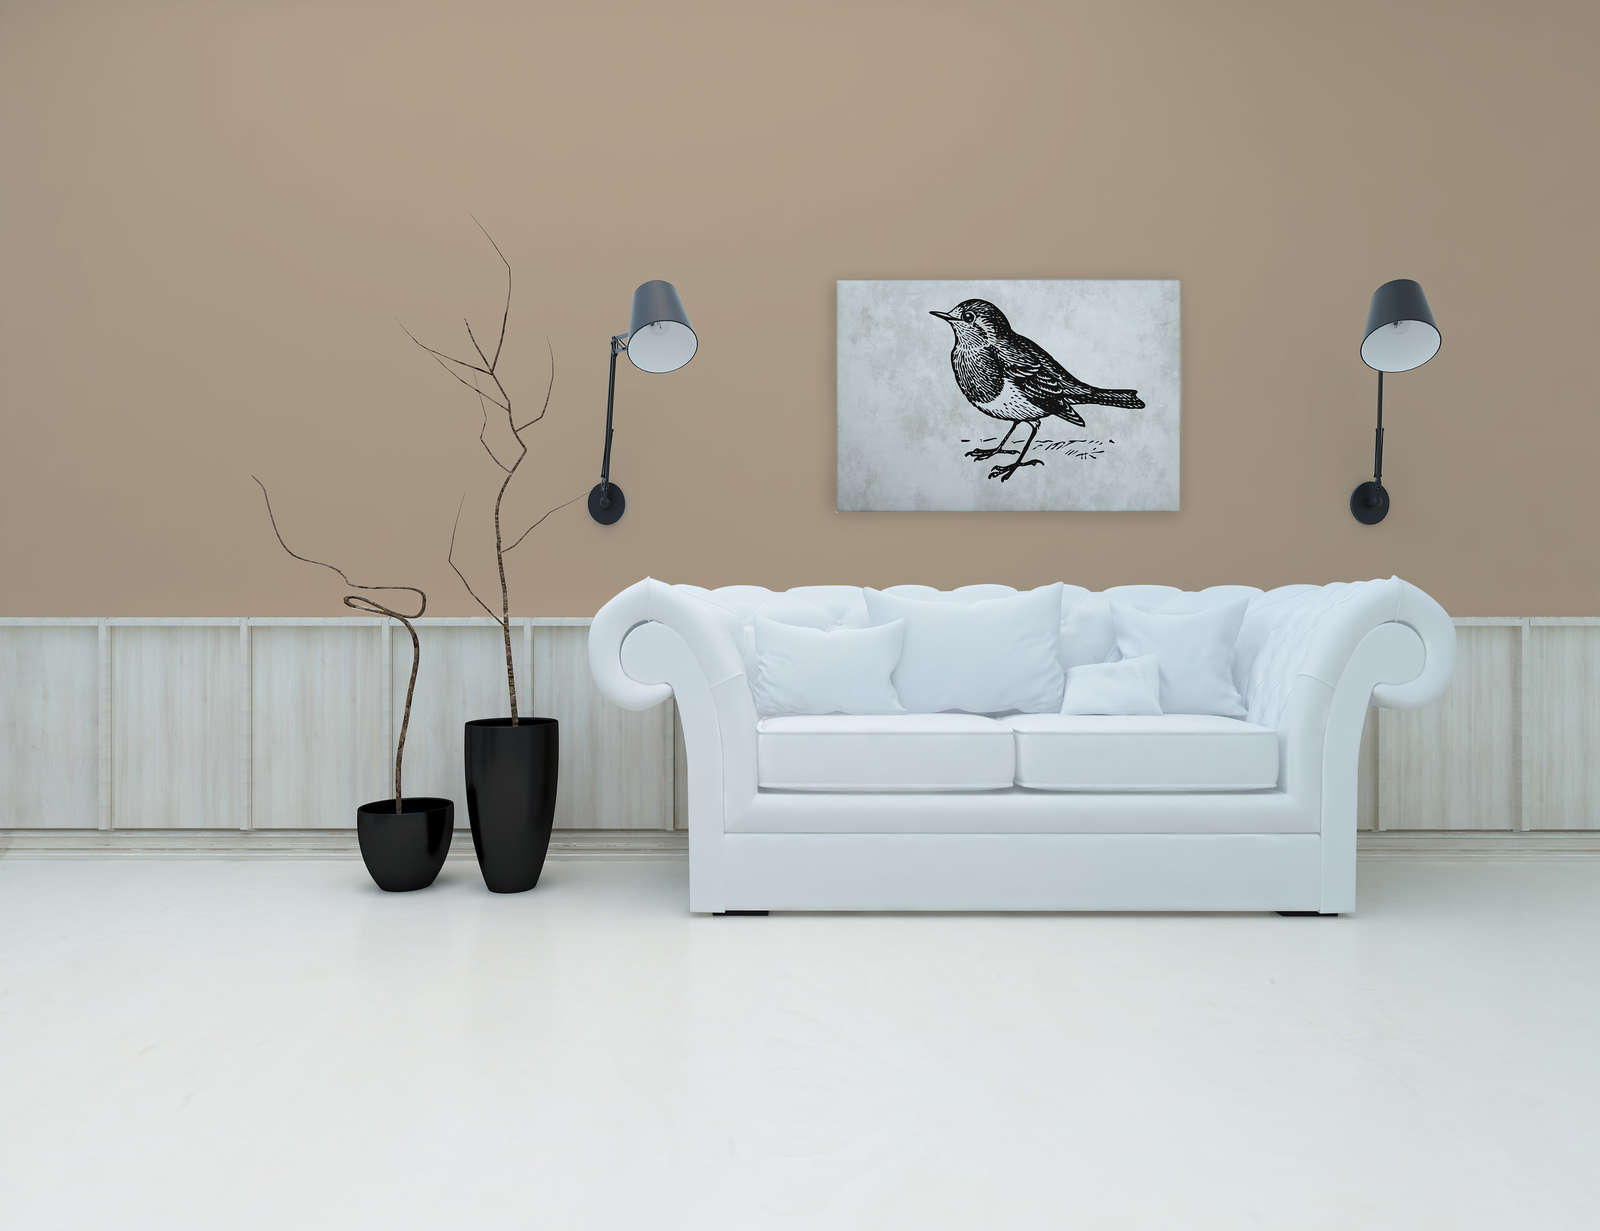             Toile noir et blanc avec oiseau - 0,90 m x 0,60 m
        